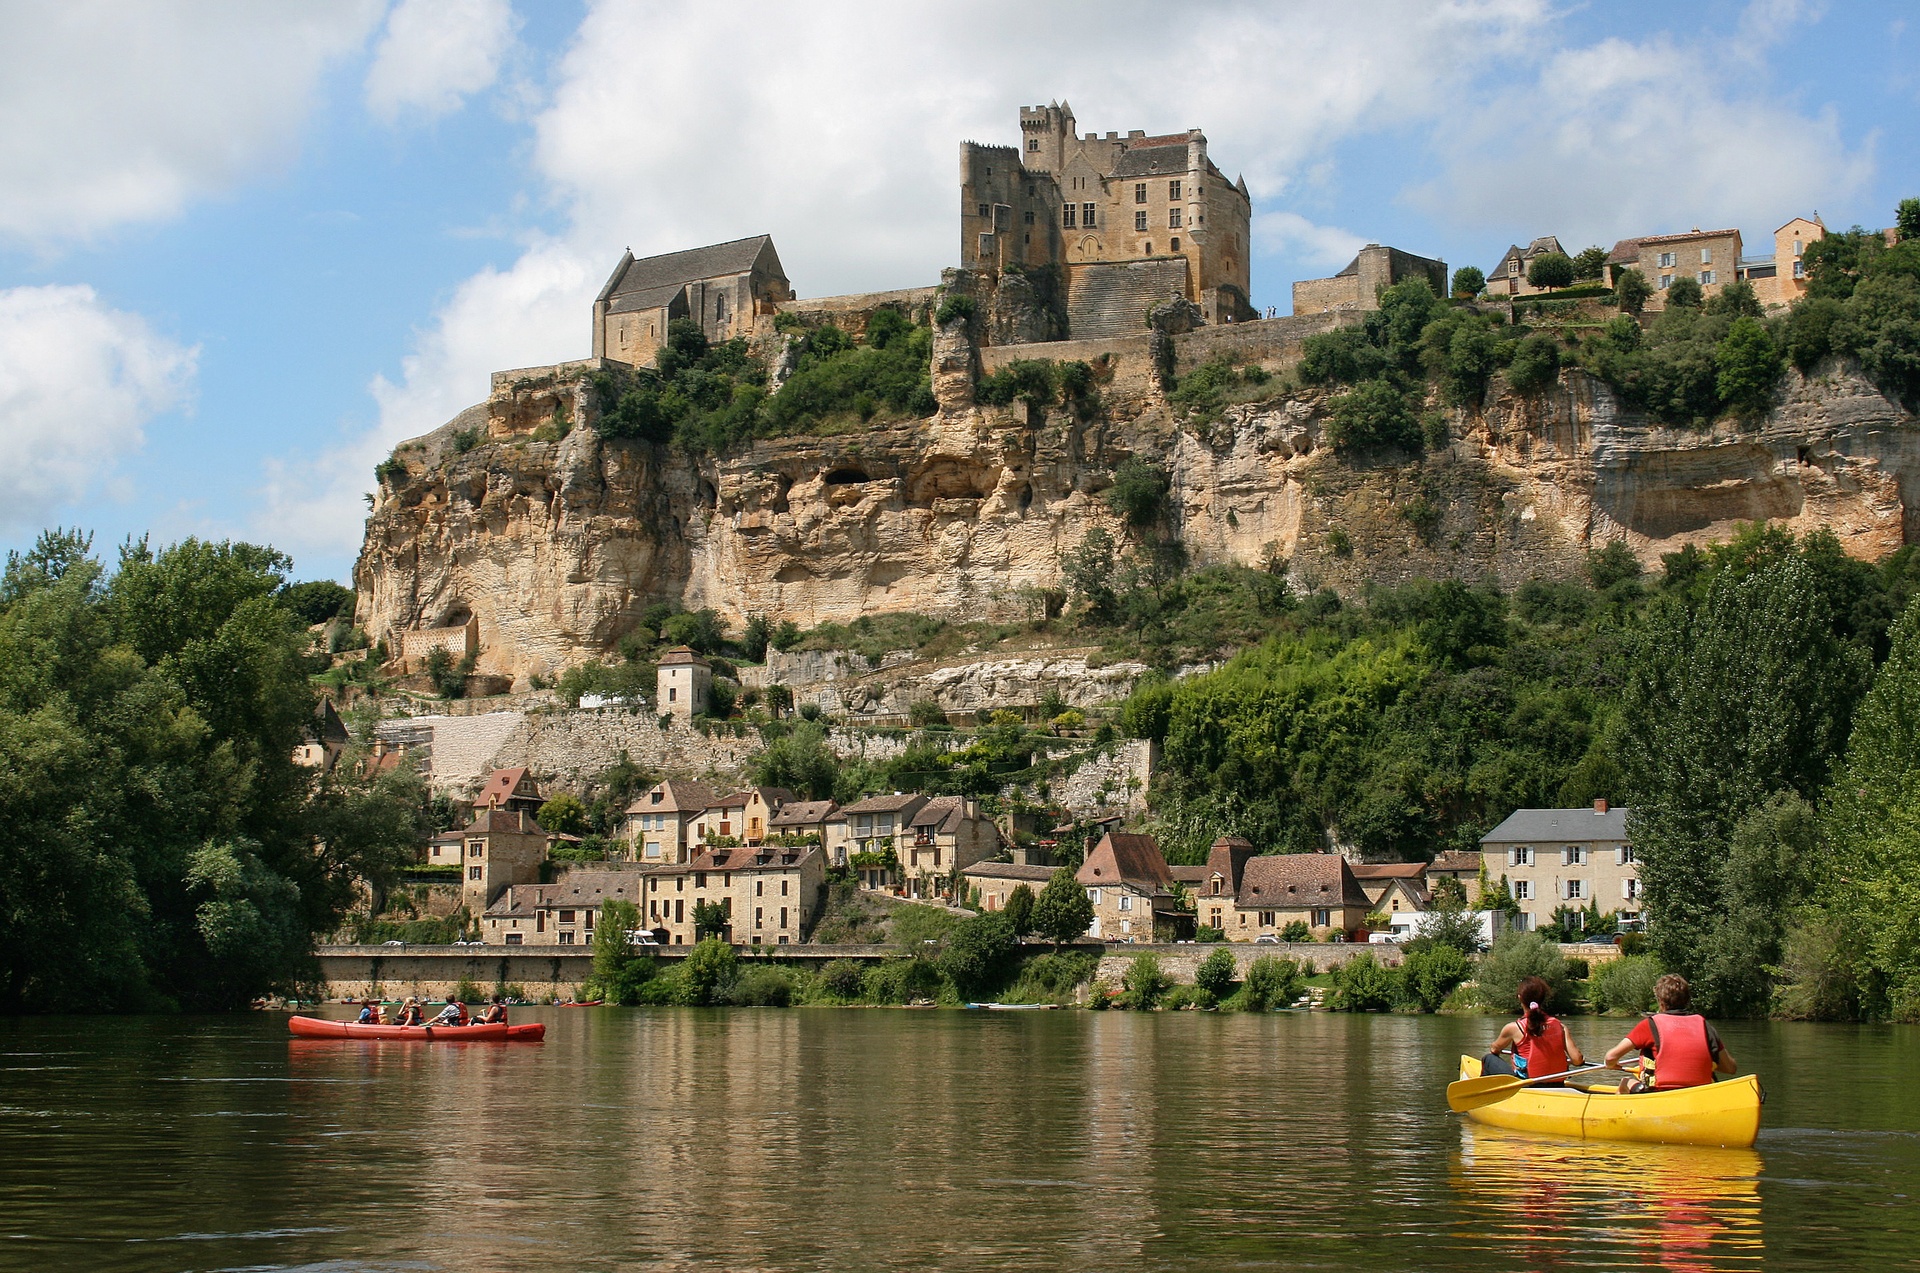 Acheter un camping en Dordogne Périgord Noir, Sarlat, Lascaux, le Bugue, les Eyzies